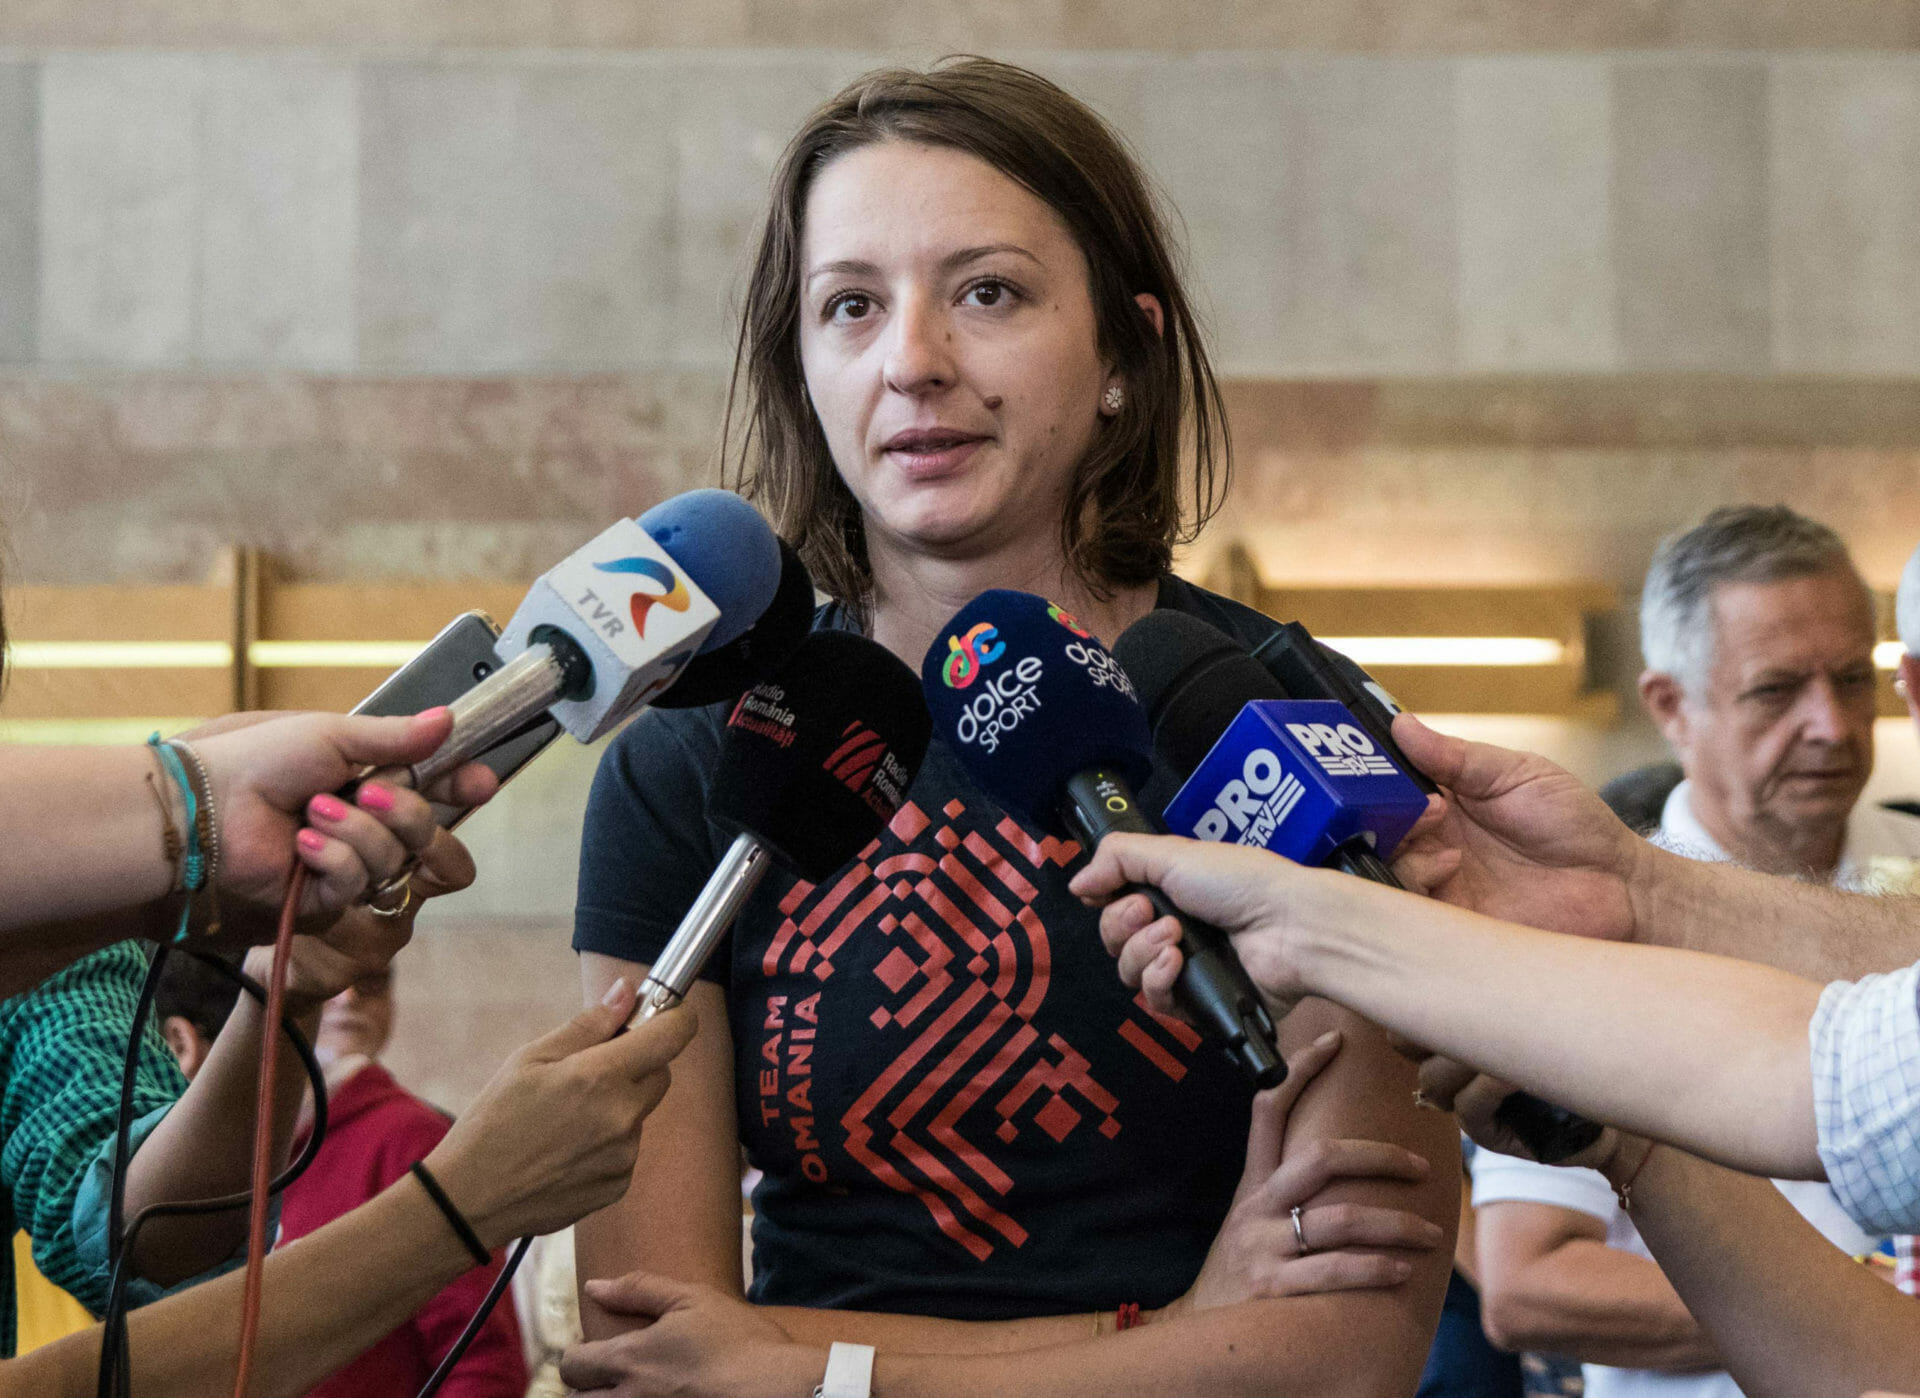 Nici o reacție a autorităților la cererea spadasinei Ana Maria Popescu